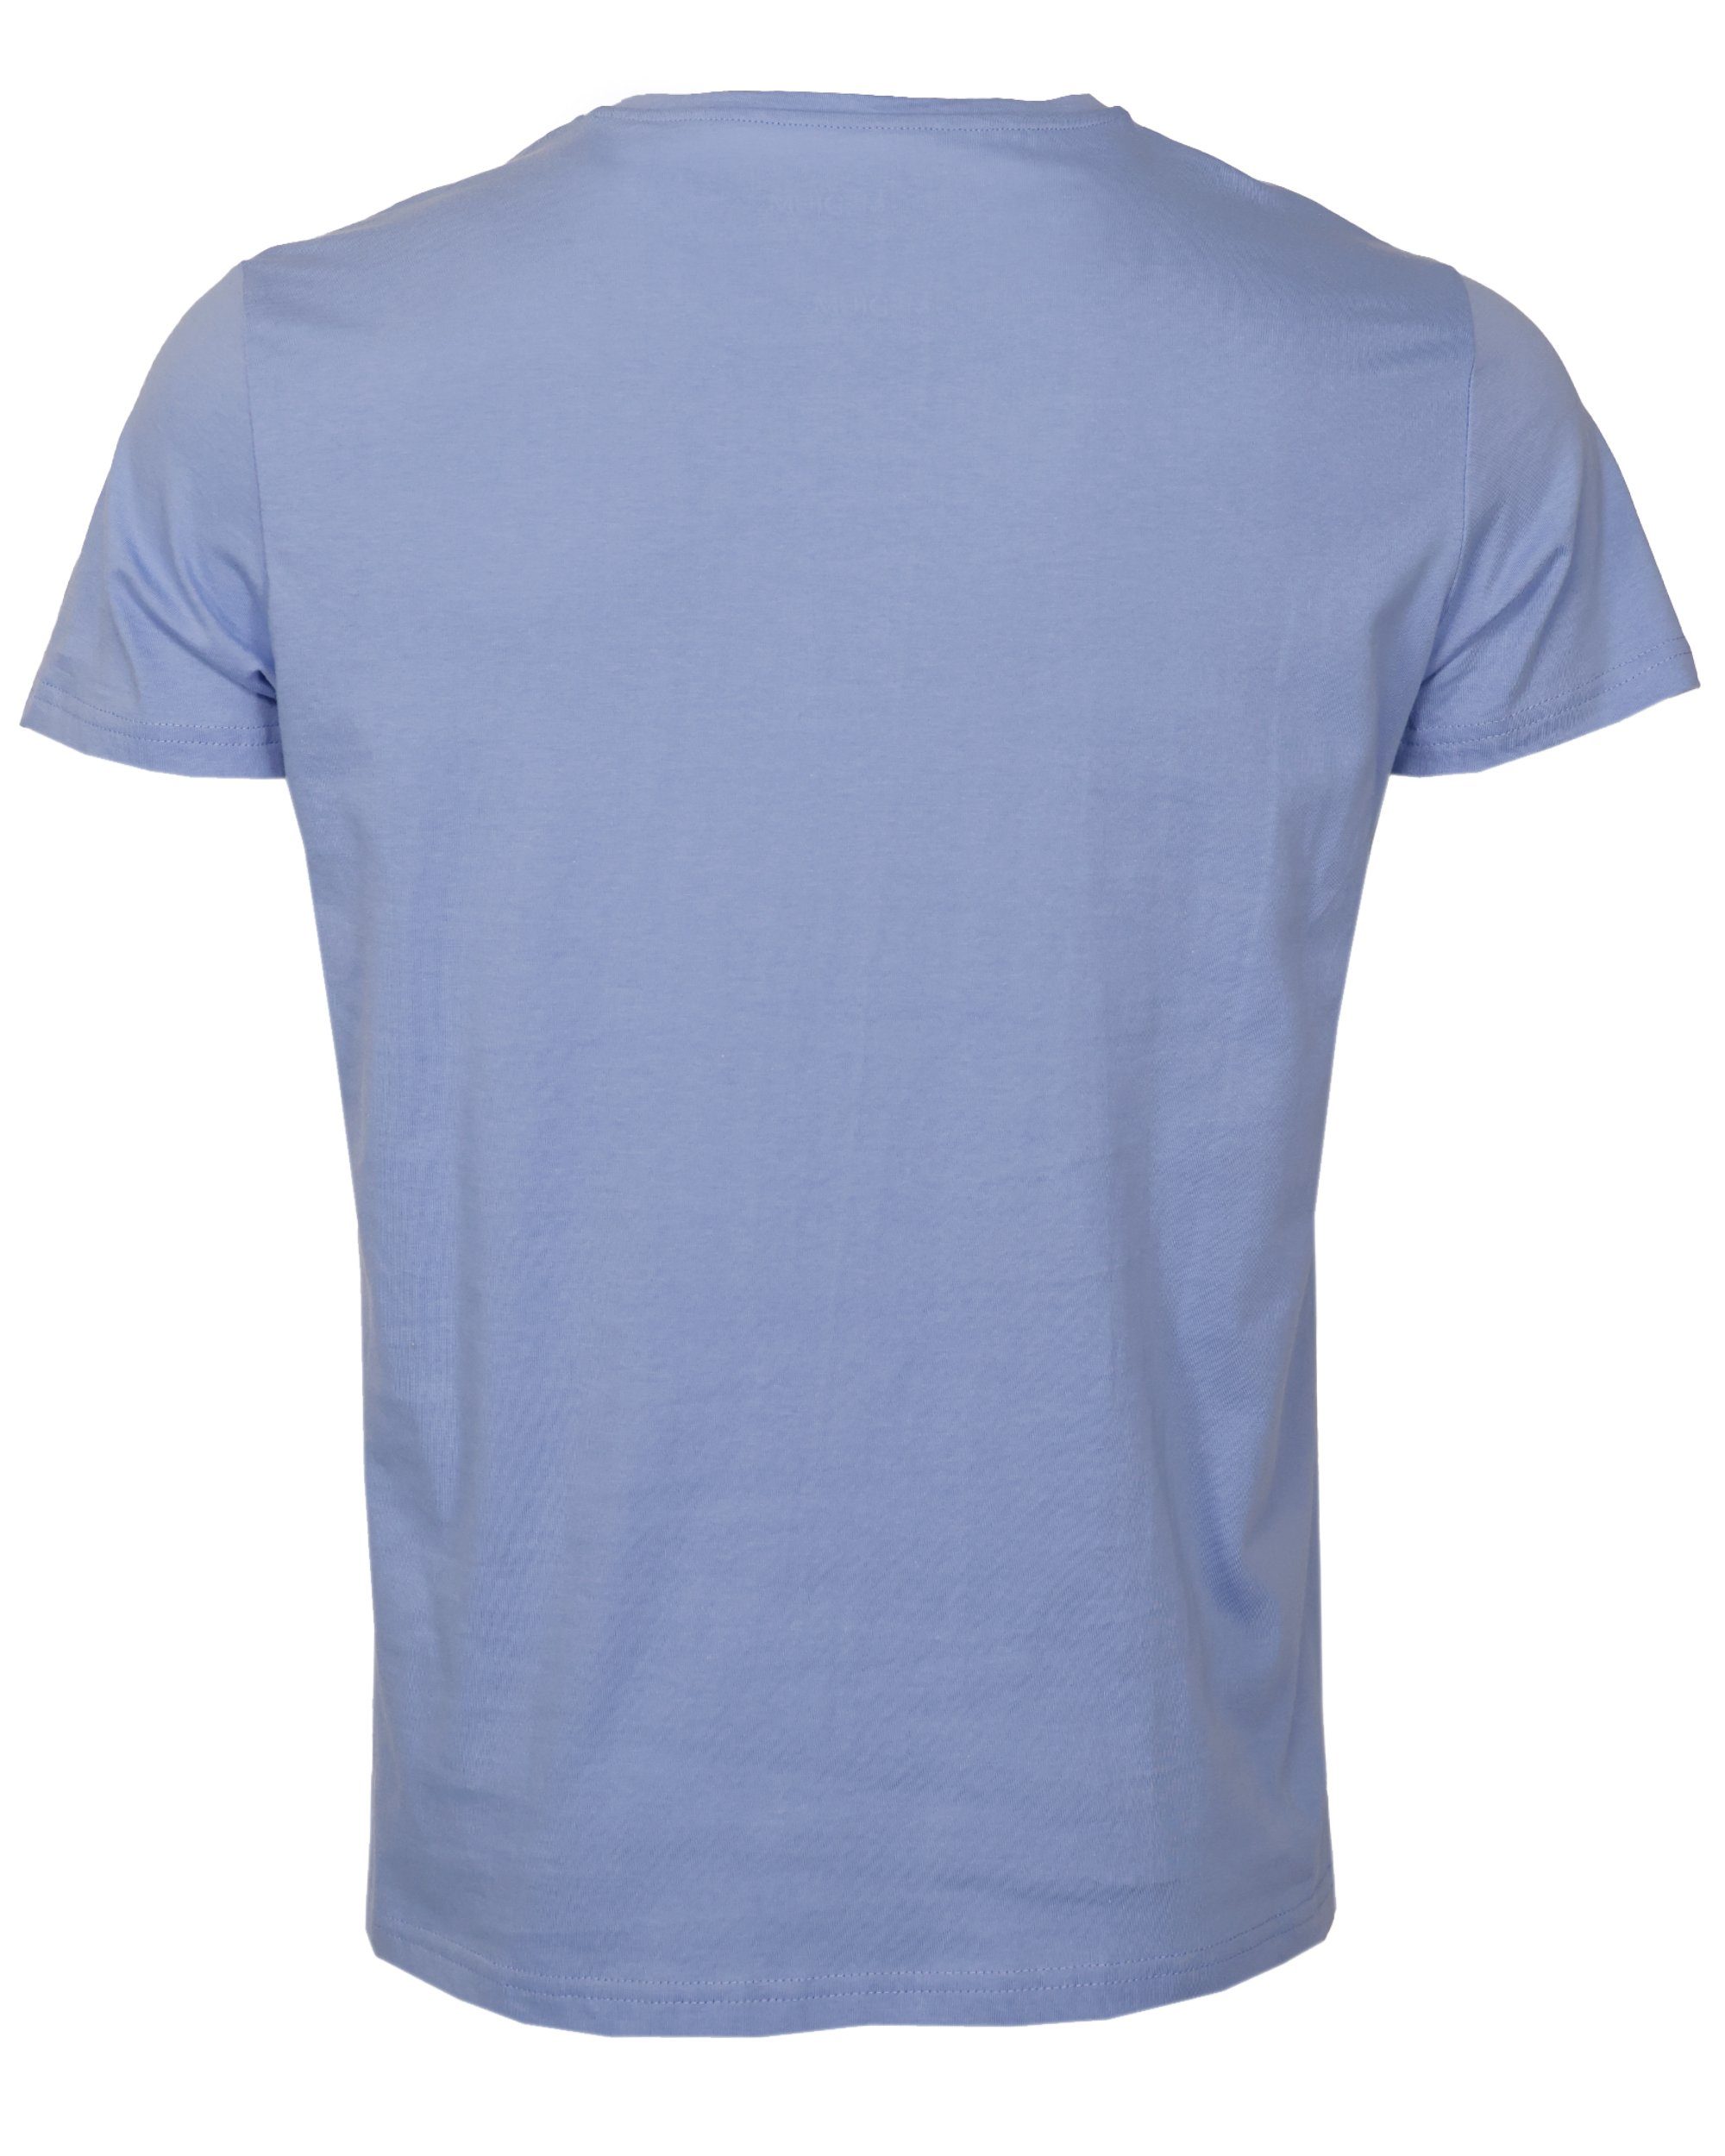 GUN T-Shirt blue TG20213036 light TOP